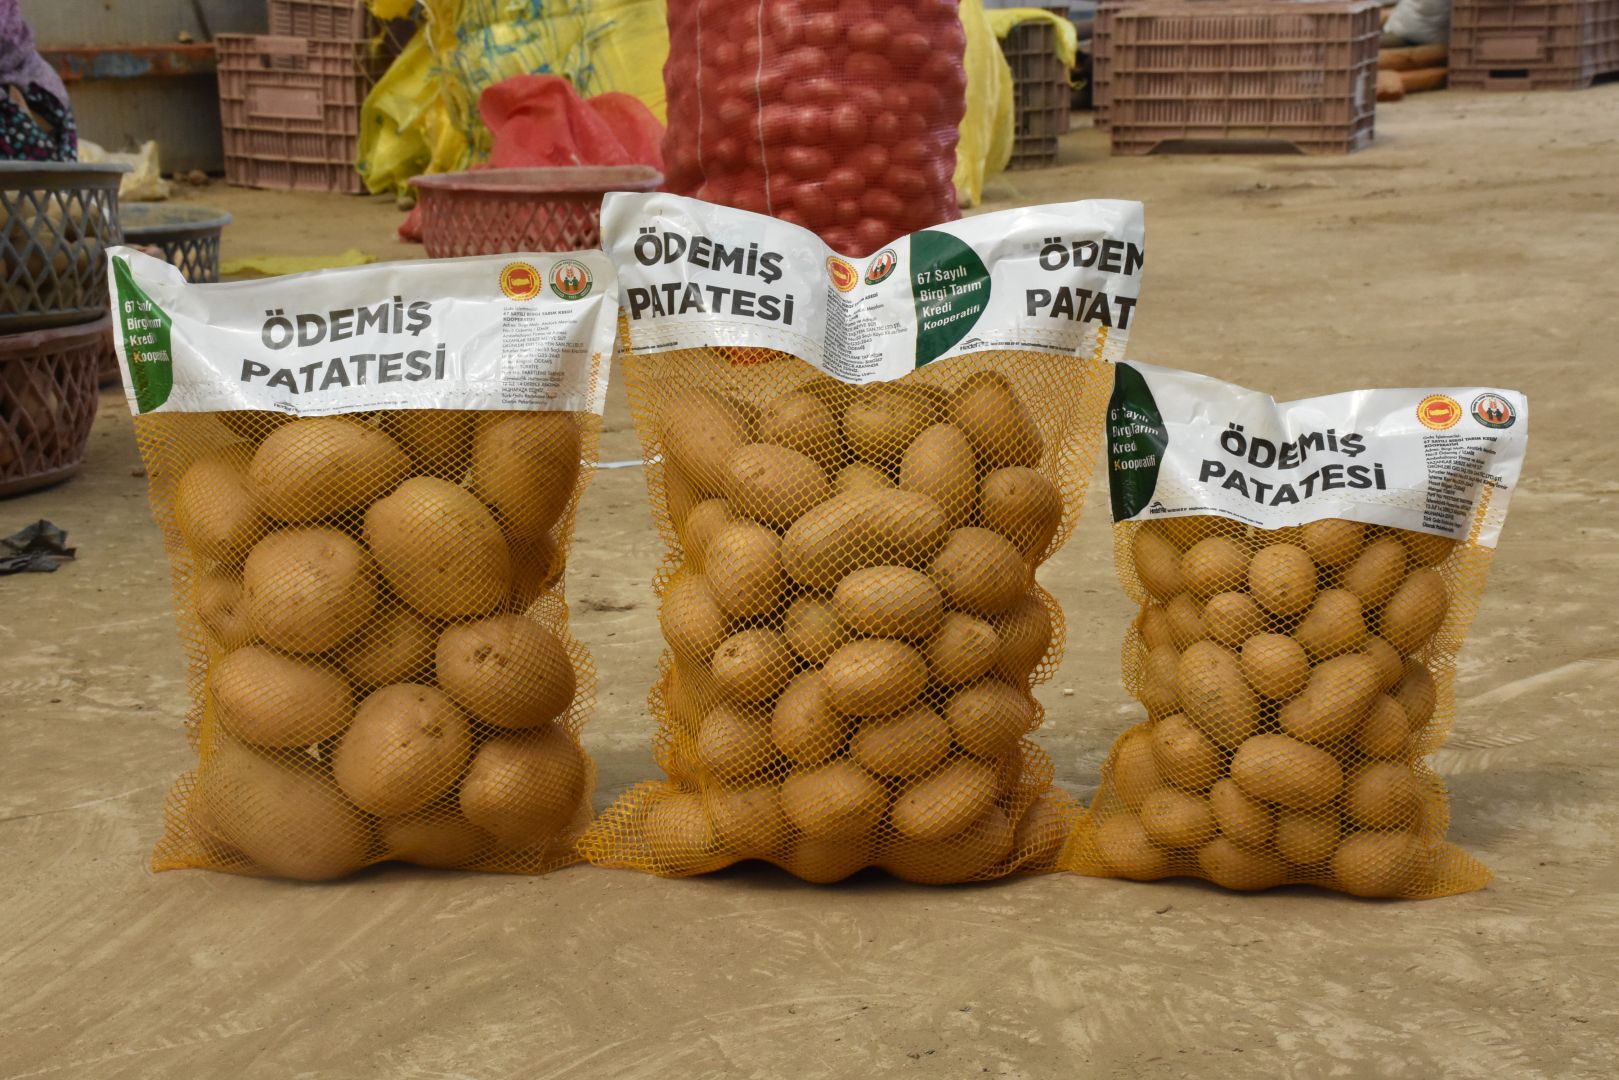 Ödemiş’ten hasat edilen altın rengi patatesler market raflarını süslüyor